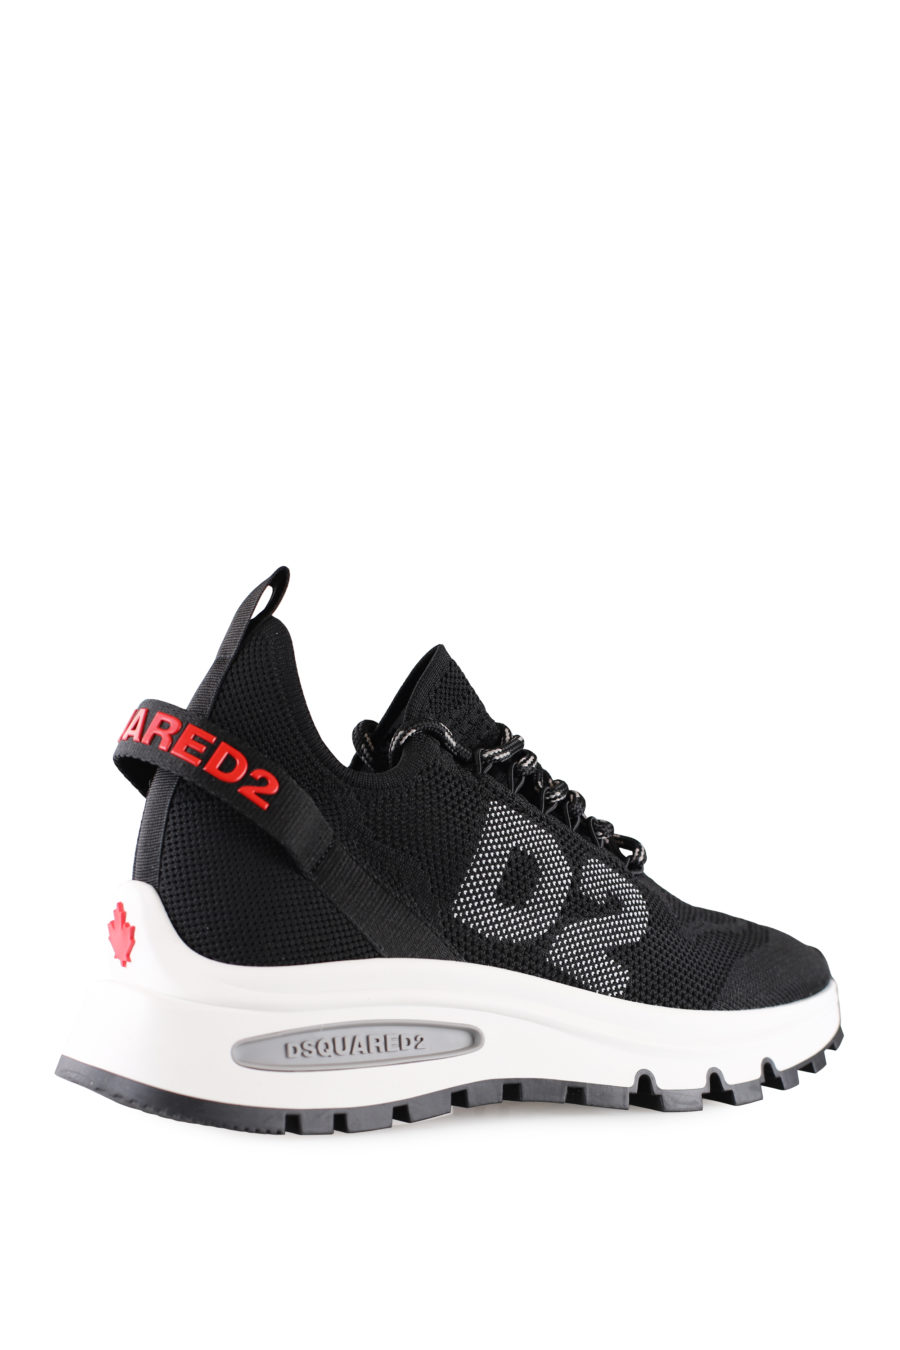 Zapatillas negras con logo pequeño rojo y "D2" - IMG 0006